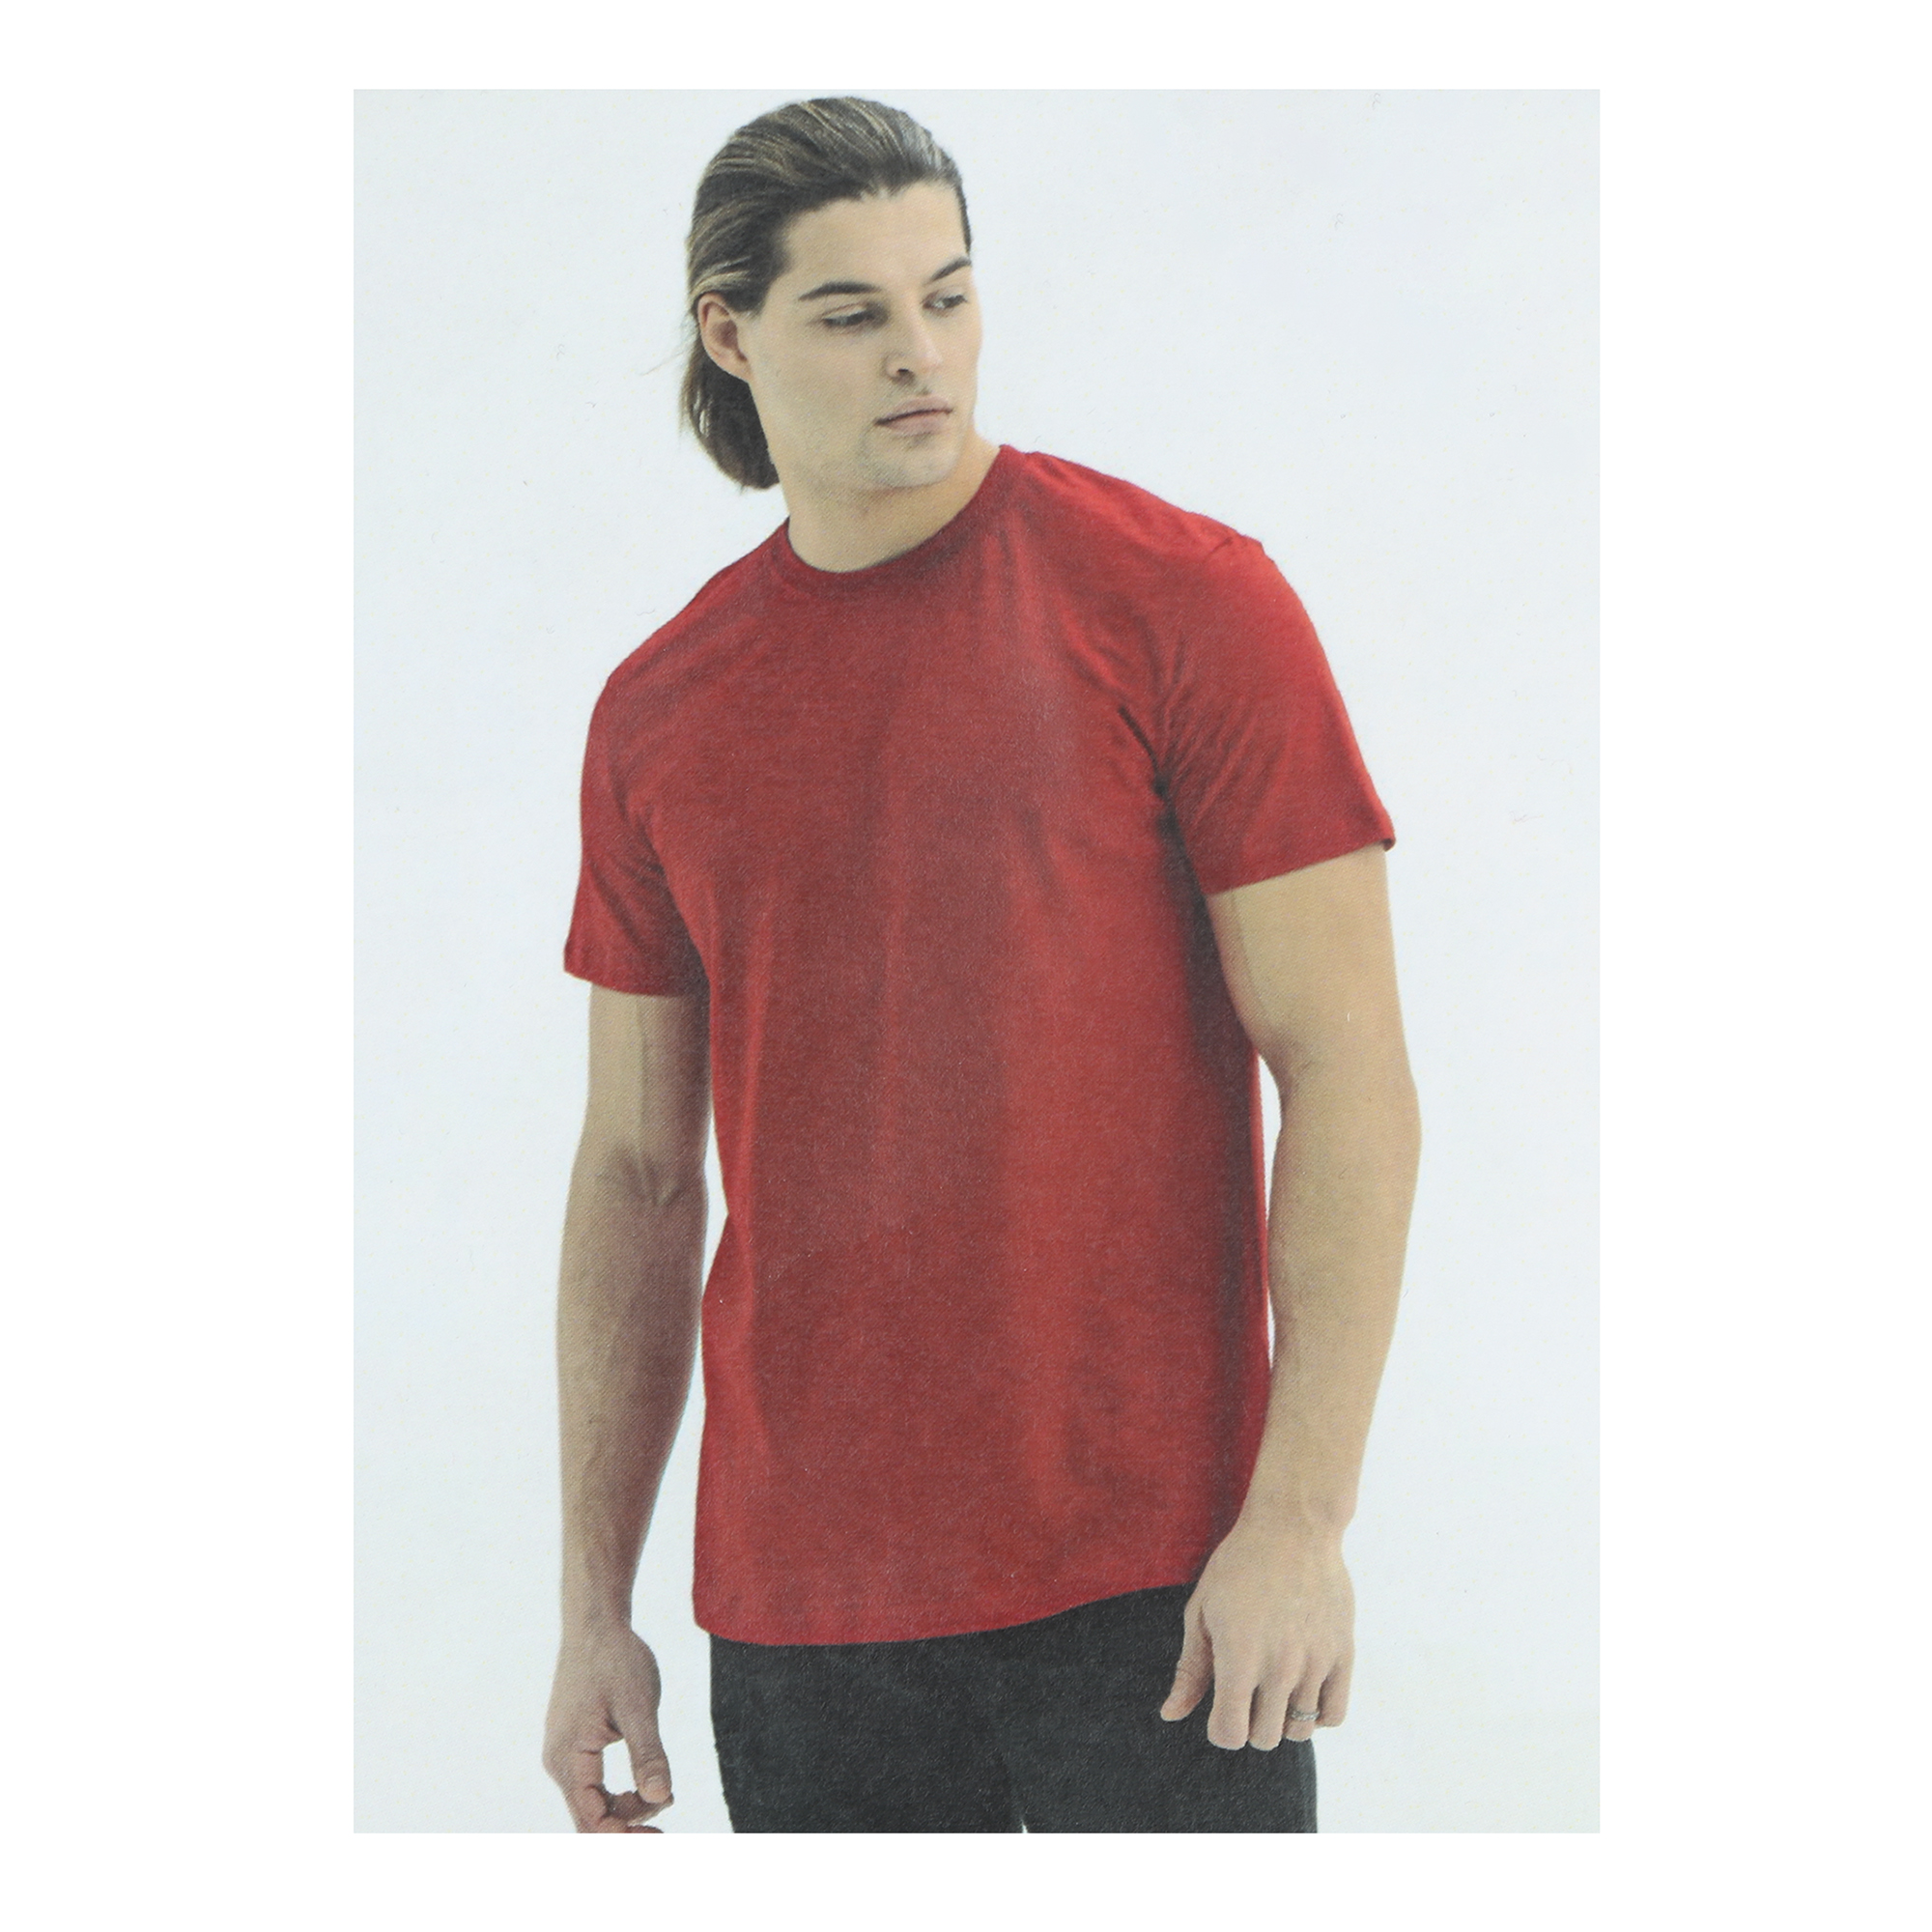 Мужская футболка Pantelemone MF-913 52 красная, цвет красный, размер 52 - фото 5